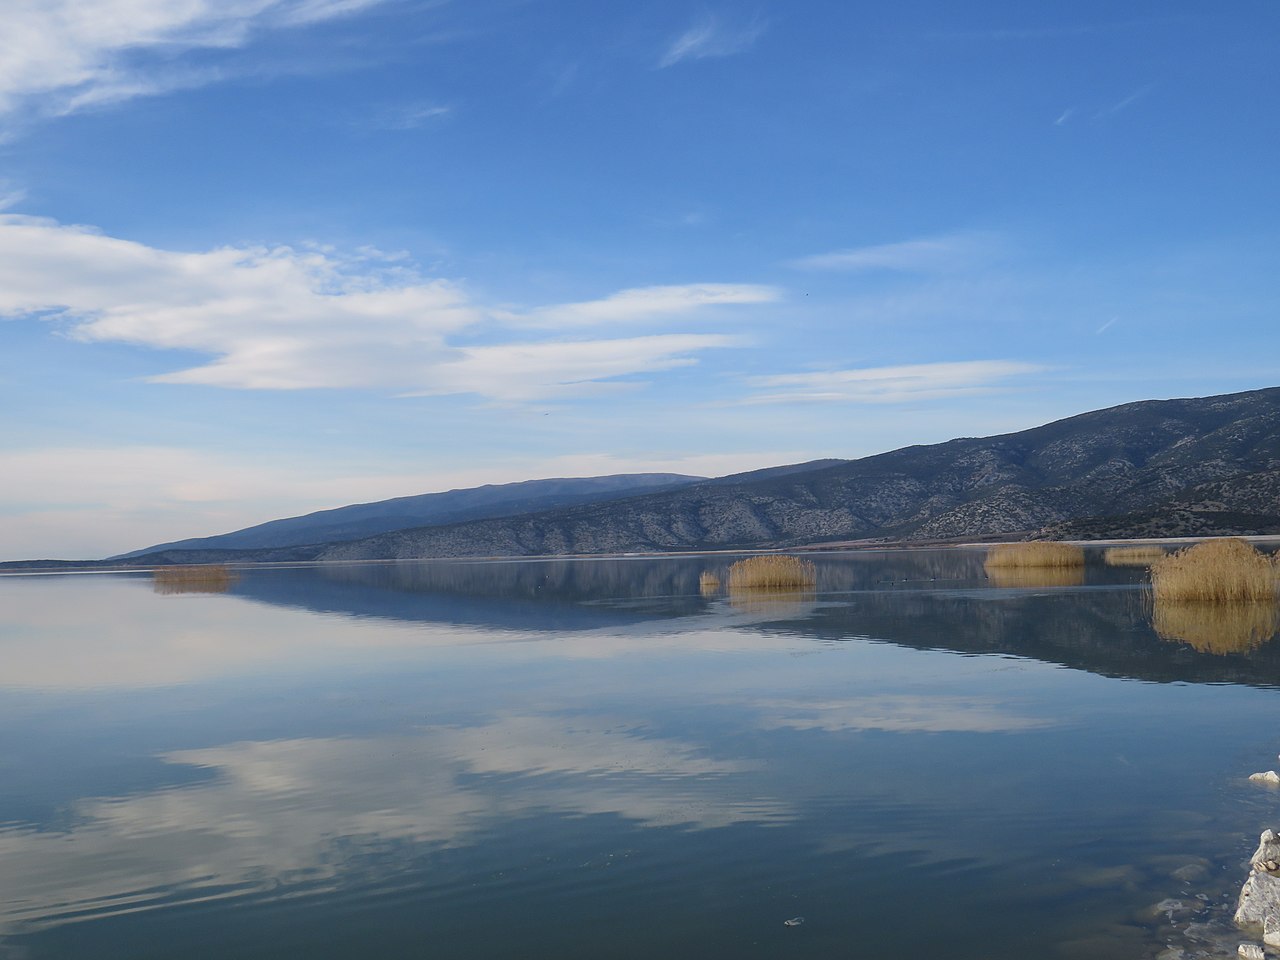 Κακοκαιρία Daniel: Κίνδυνος υπερχείλισης της Λίμνης Κάρλα – Σε επιφυλακή οι κάτοικοι της περιοχής